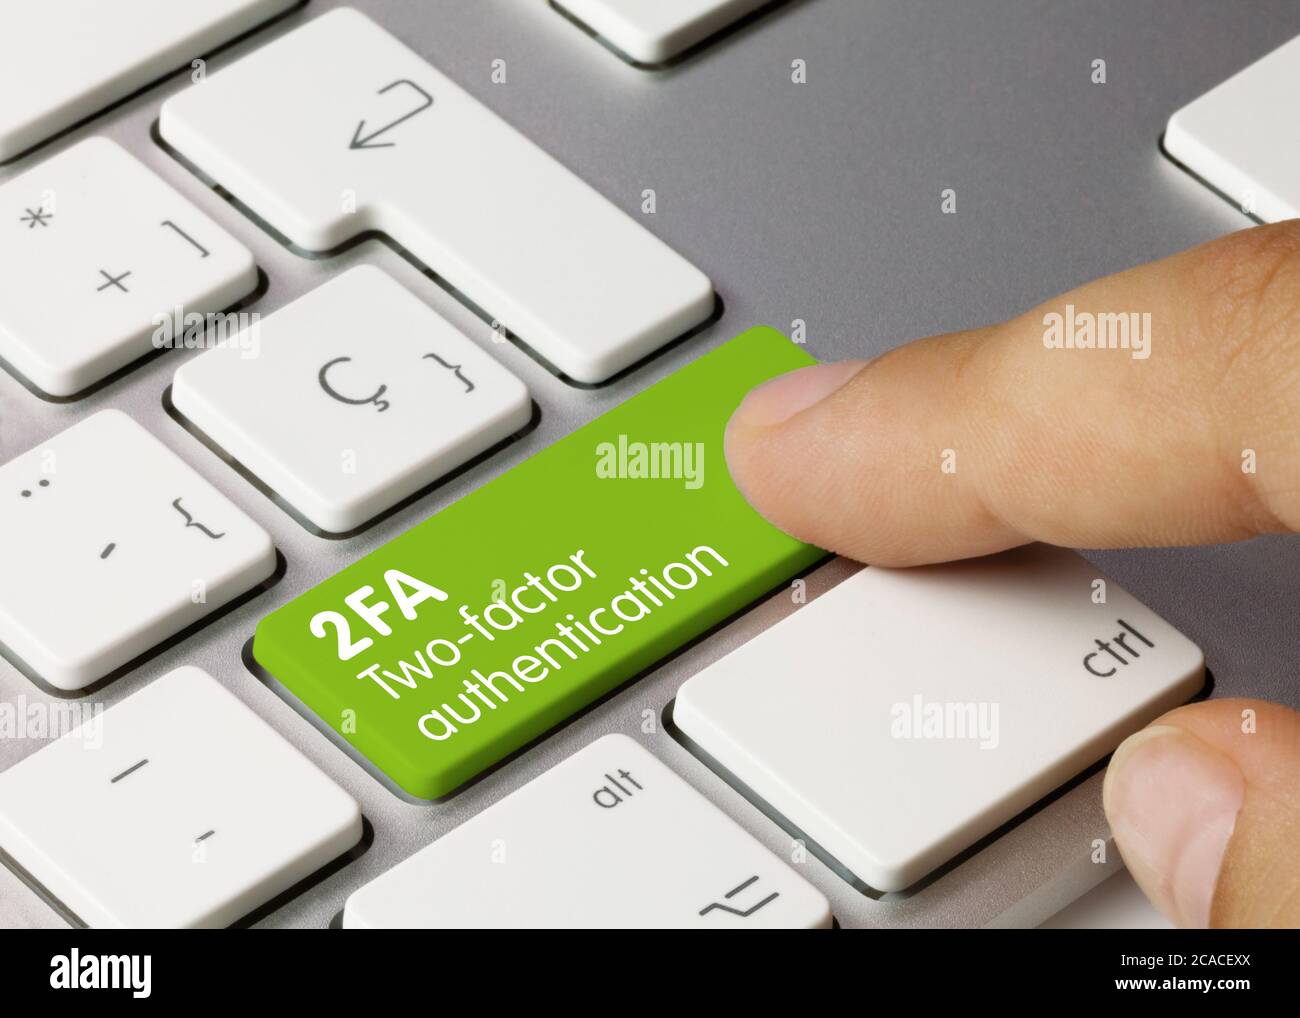 Authentification à deux facteurs 2FA écrite sur la touche verte du clavier métallique. Touche enfoncée avec le doigt Banque D'Images